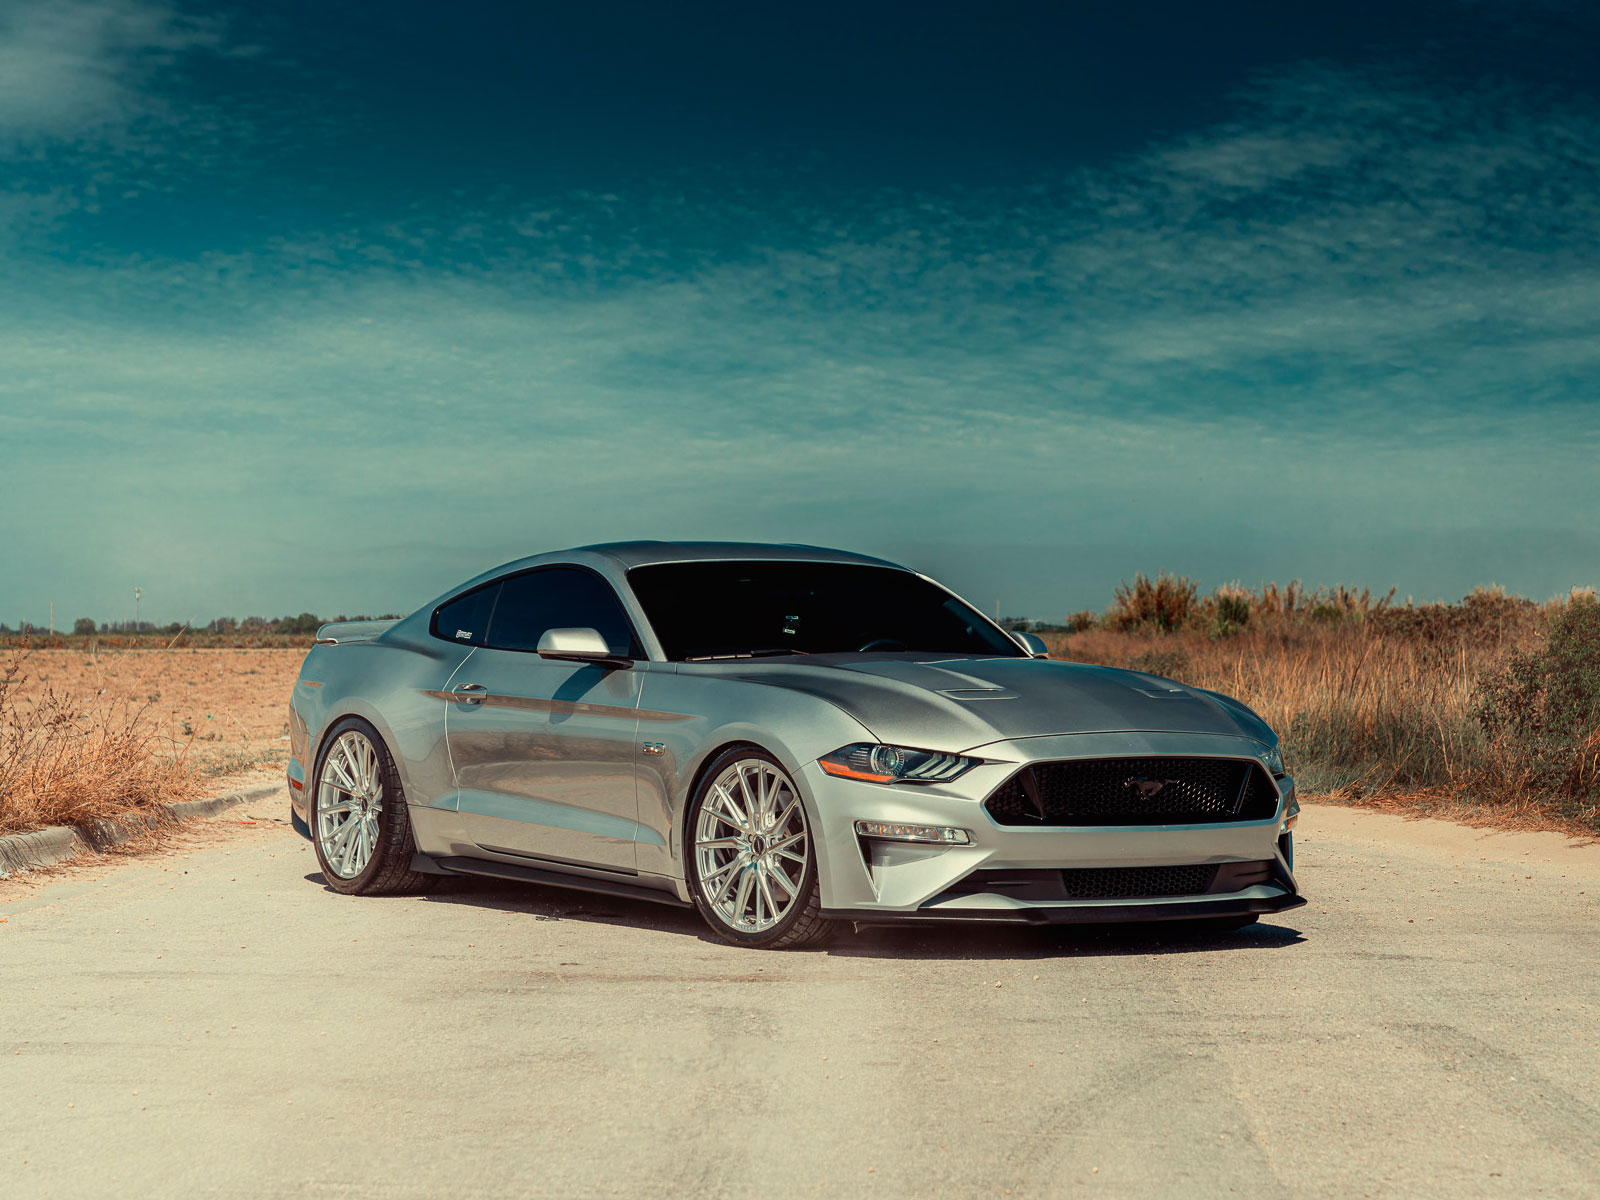  შემდეგი თაობის Ford Mustang-ი შესაძლოა სრულ ამძრავიანი ჰიბრიდი გახდეს